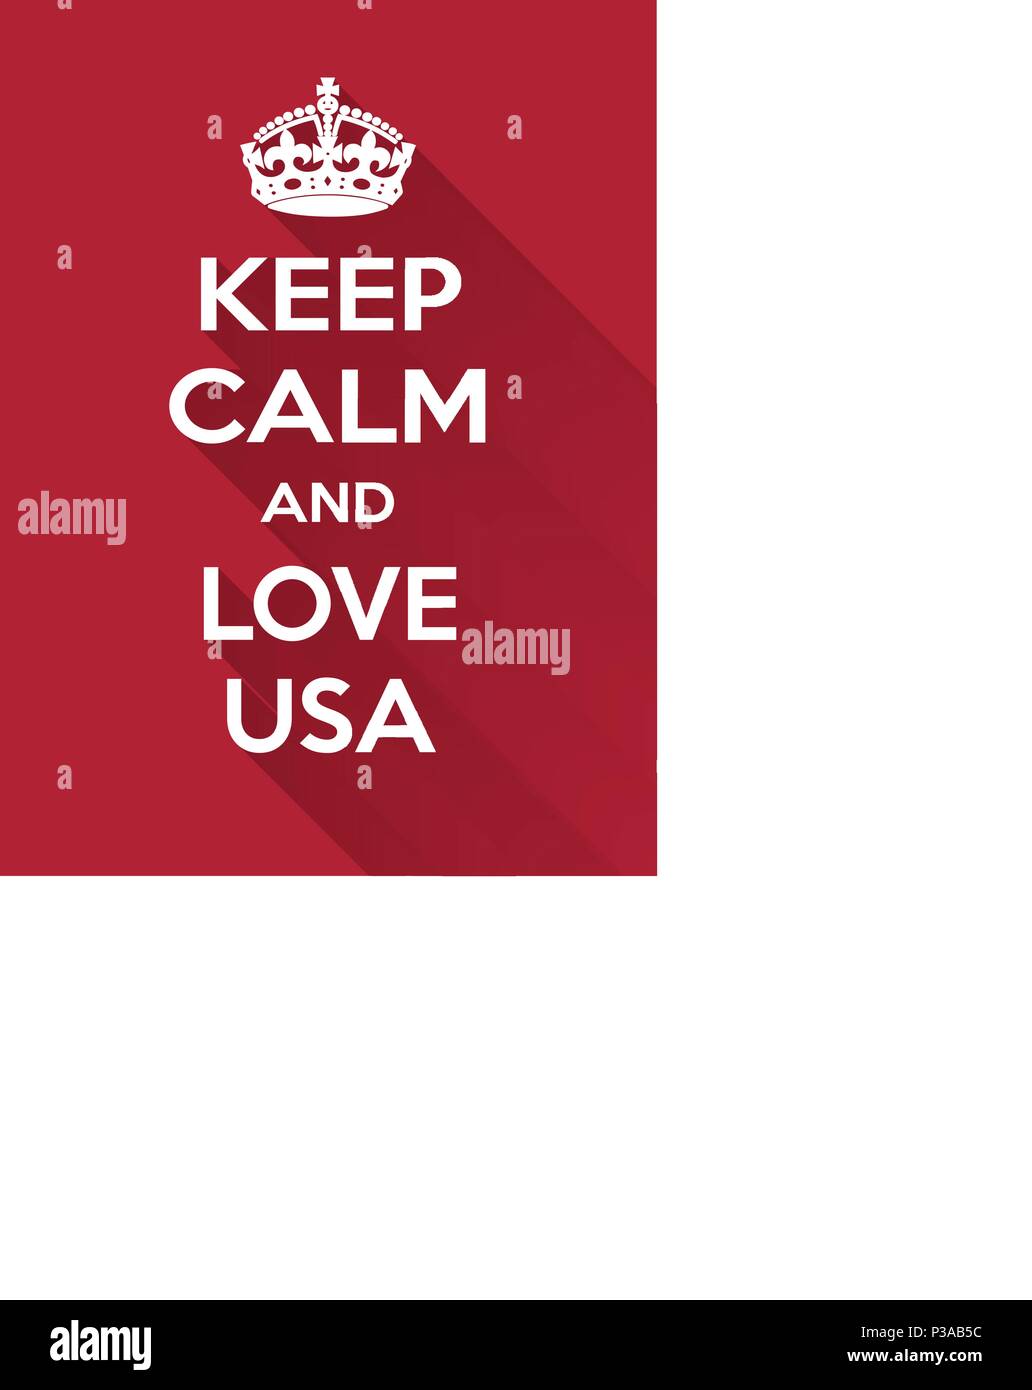 Rectangulaire verticale rouge-blanc de la motivation l'amour sur usa poster basé à vintage retro style garder clam Illustration de Vecteur